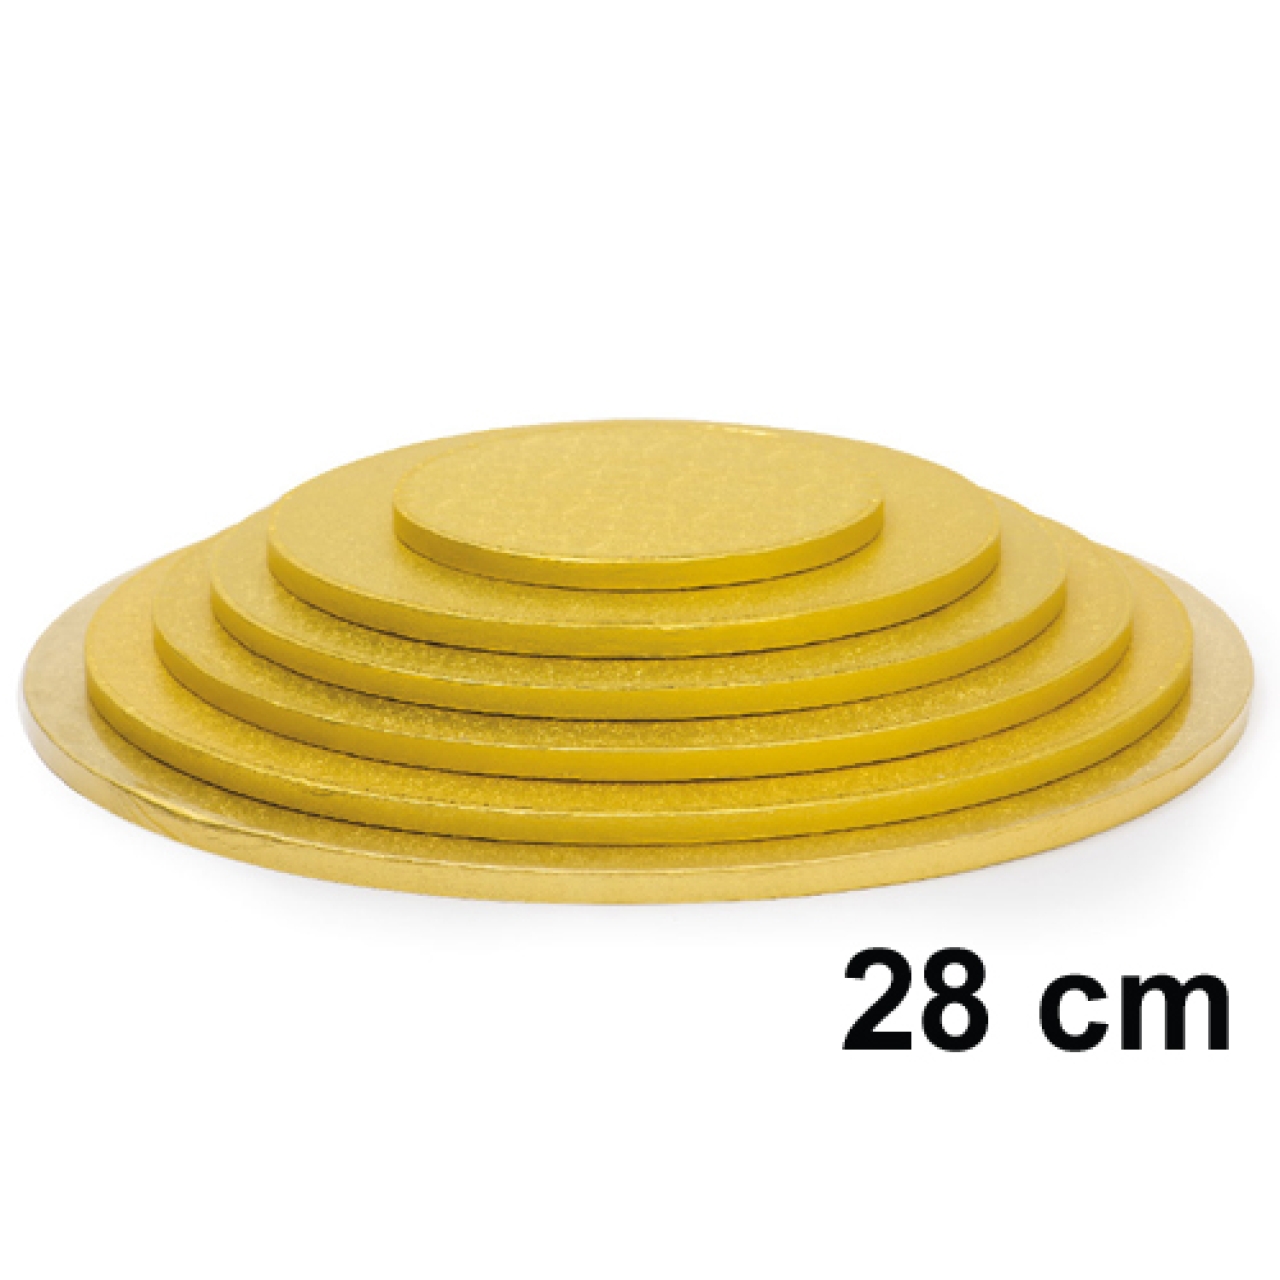 Cake Board, Gold, Rund, 28 cm, ~1,2 cm dick